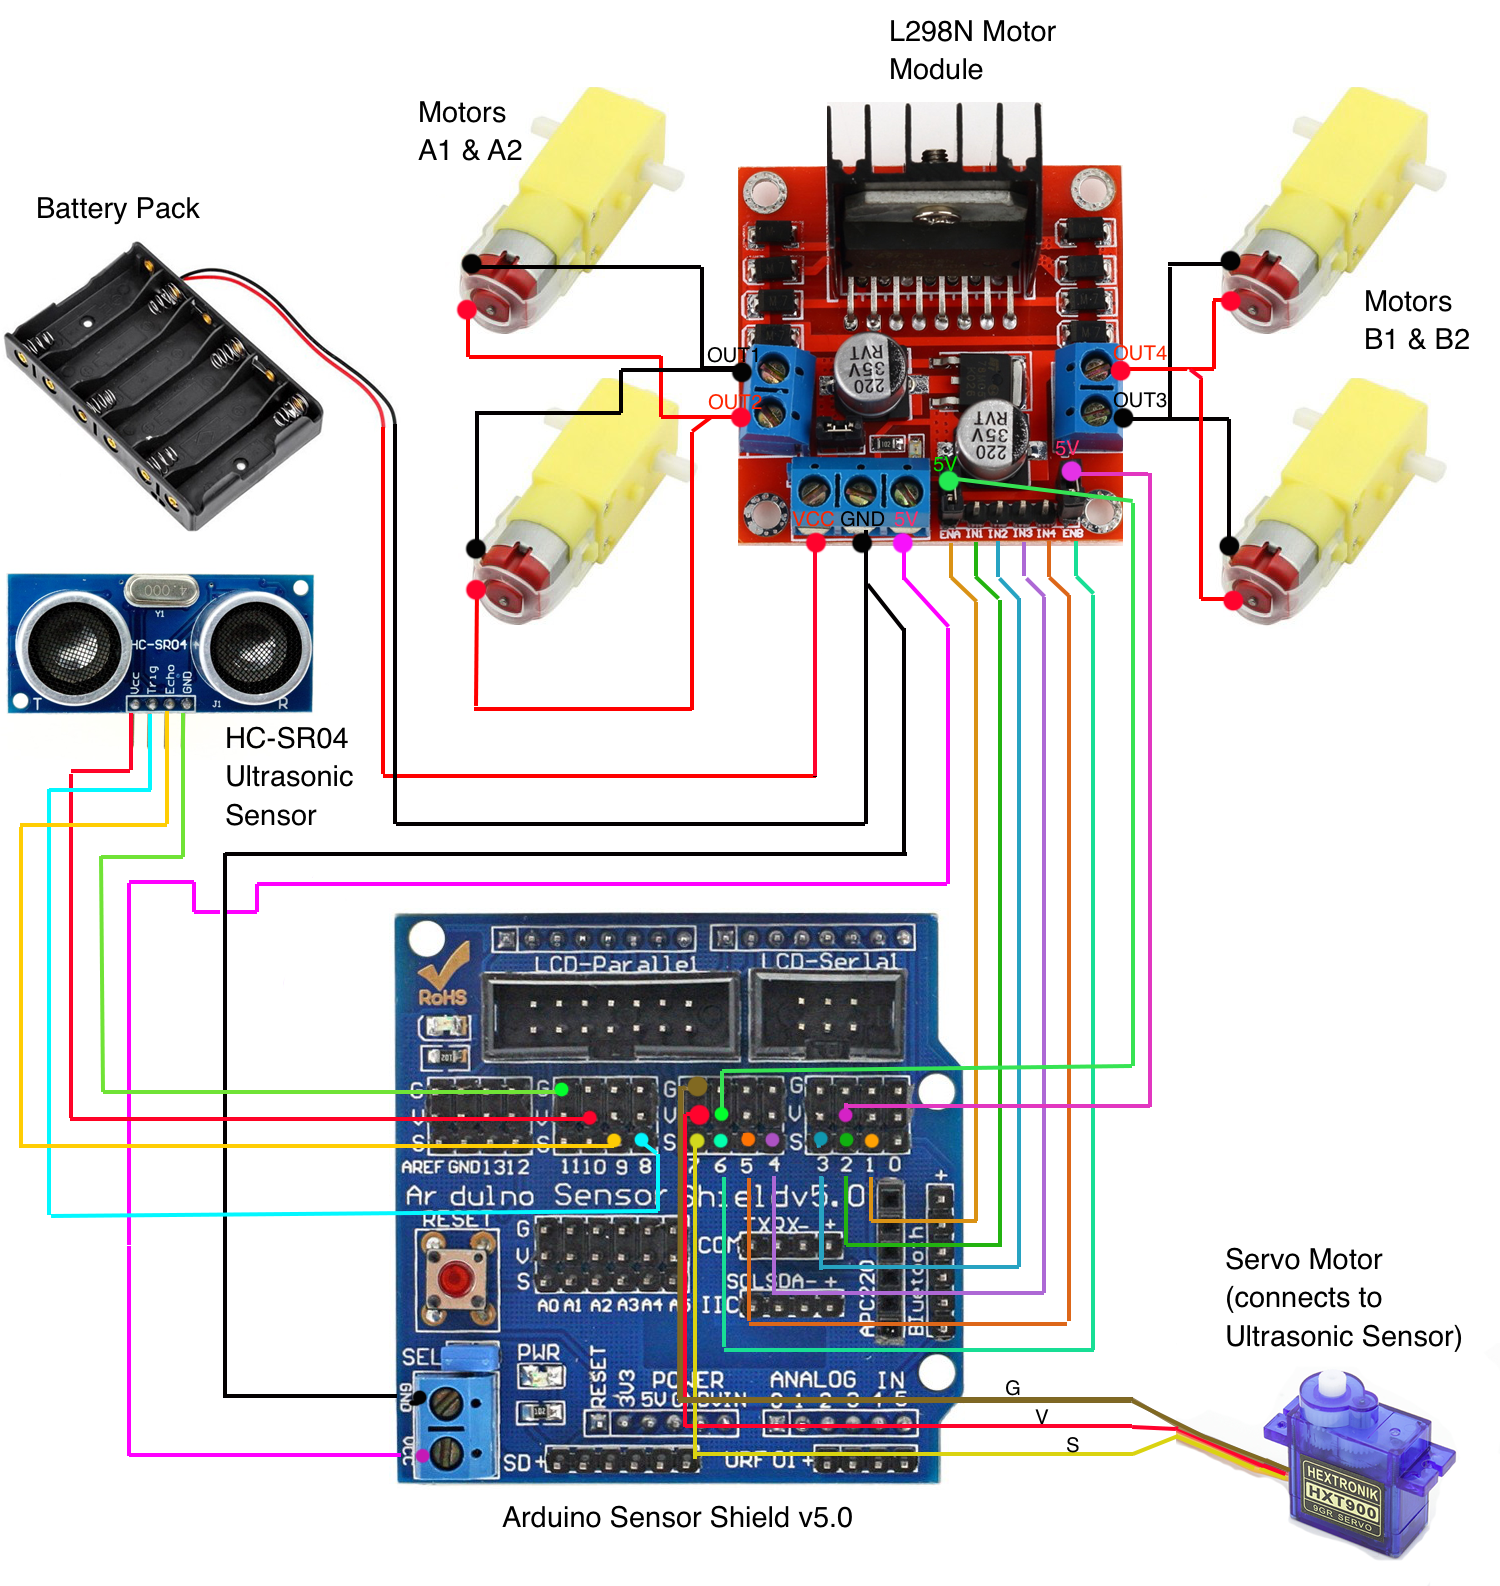 Arduino 4WD Esquema de conexiones con Sensor shield v5.0